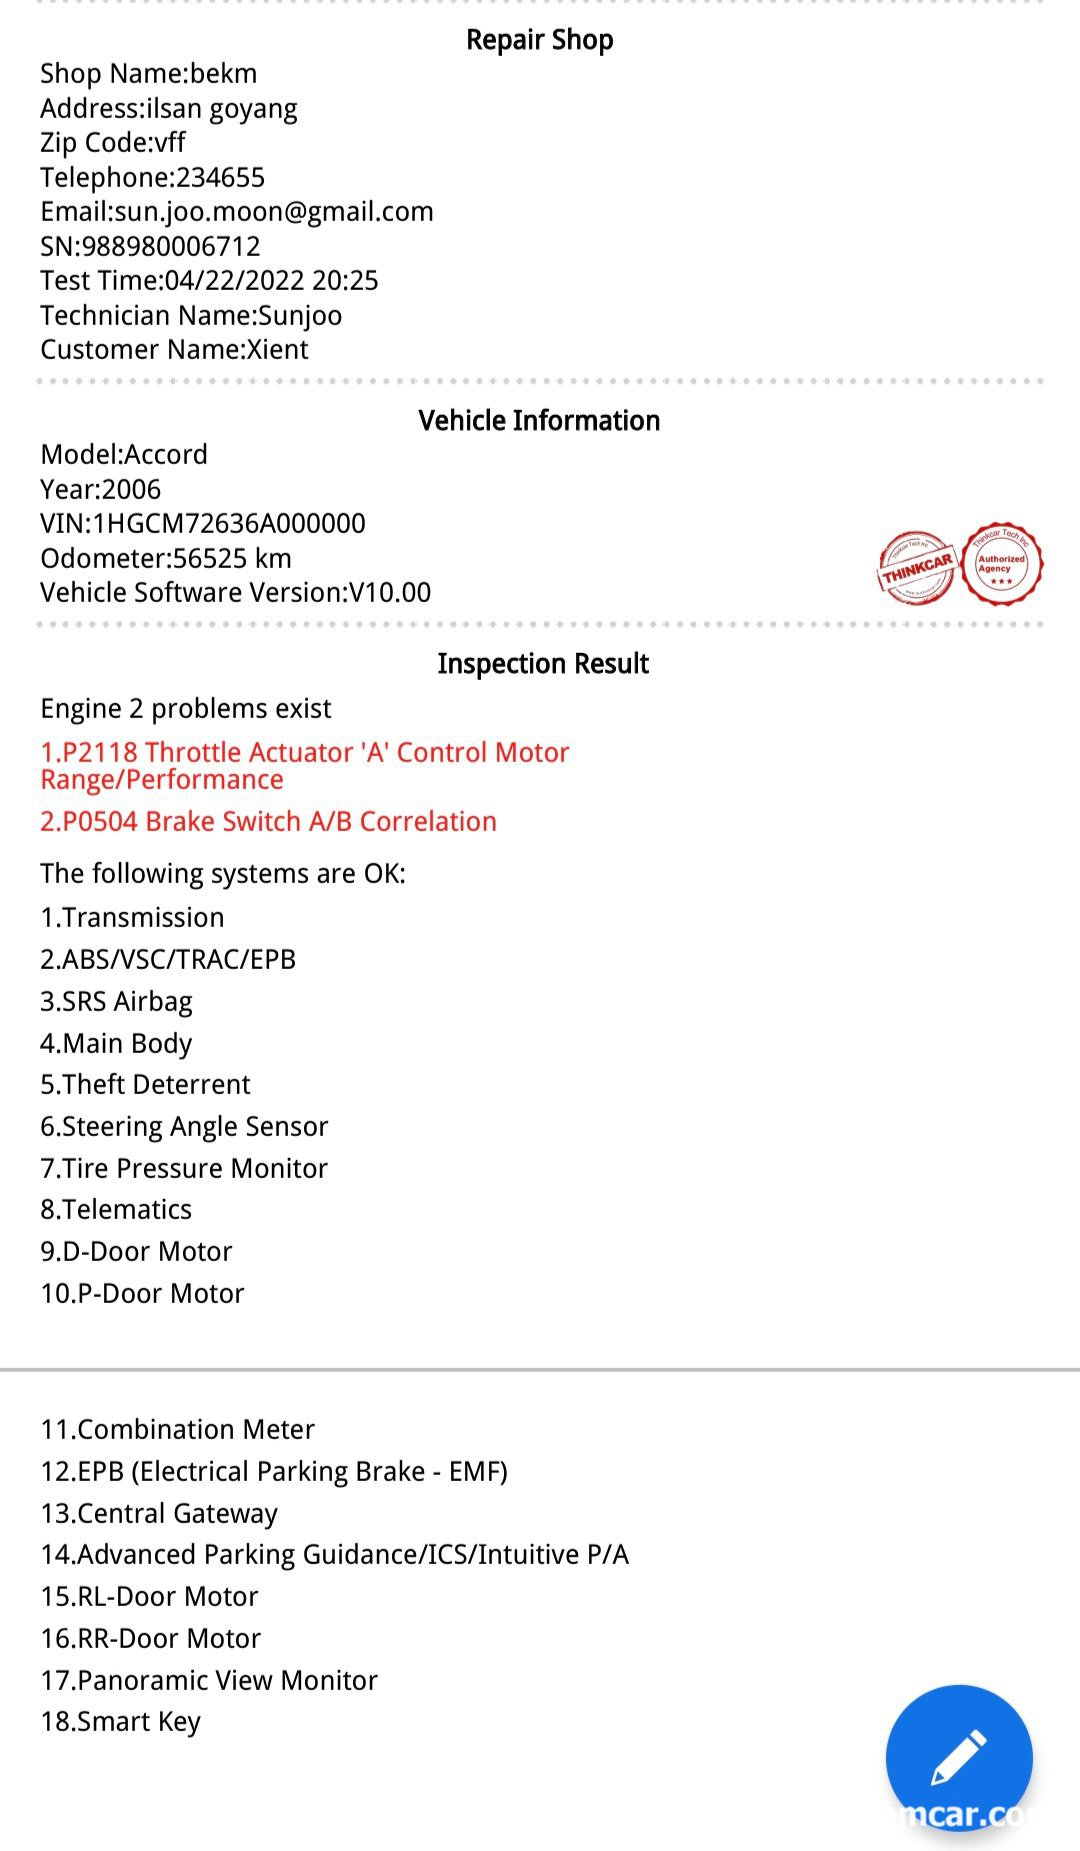 베콤카 기존 고객에 풀시스템 진단 차량건강보고서 무료 제공, 베콤카 차량건강검진 보고서 샘플이다. 지원하는 전장시스템을 전체 진단해서 고장코드가 있는경우 고장코드와 간단한 설명은 제공한다|ベコムカー (bekomcar)